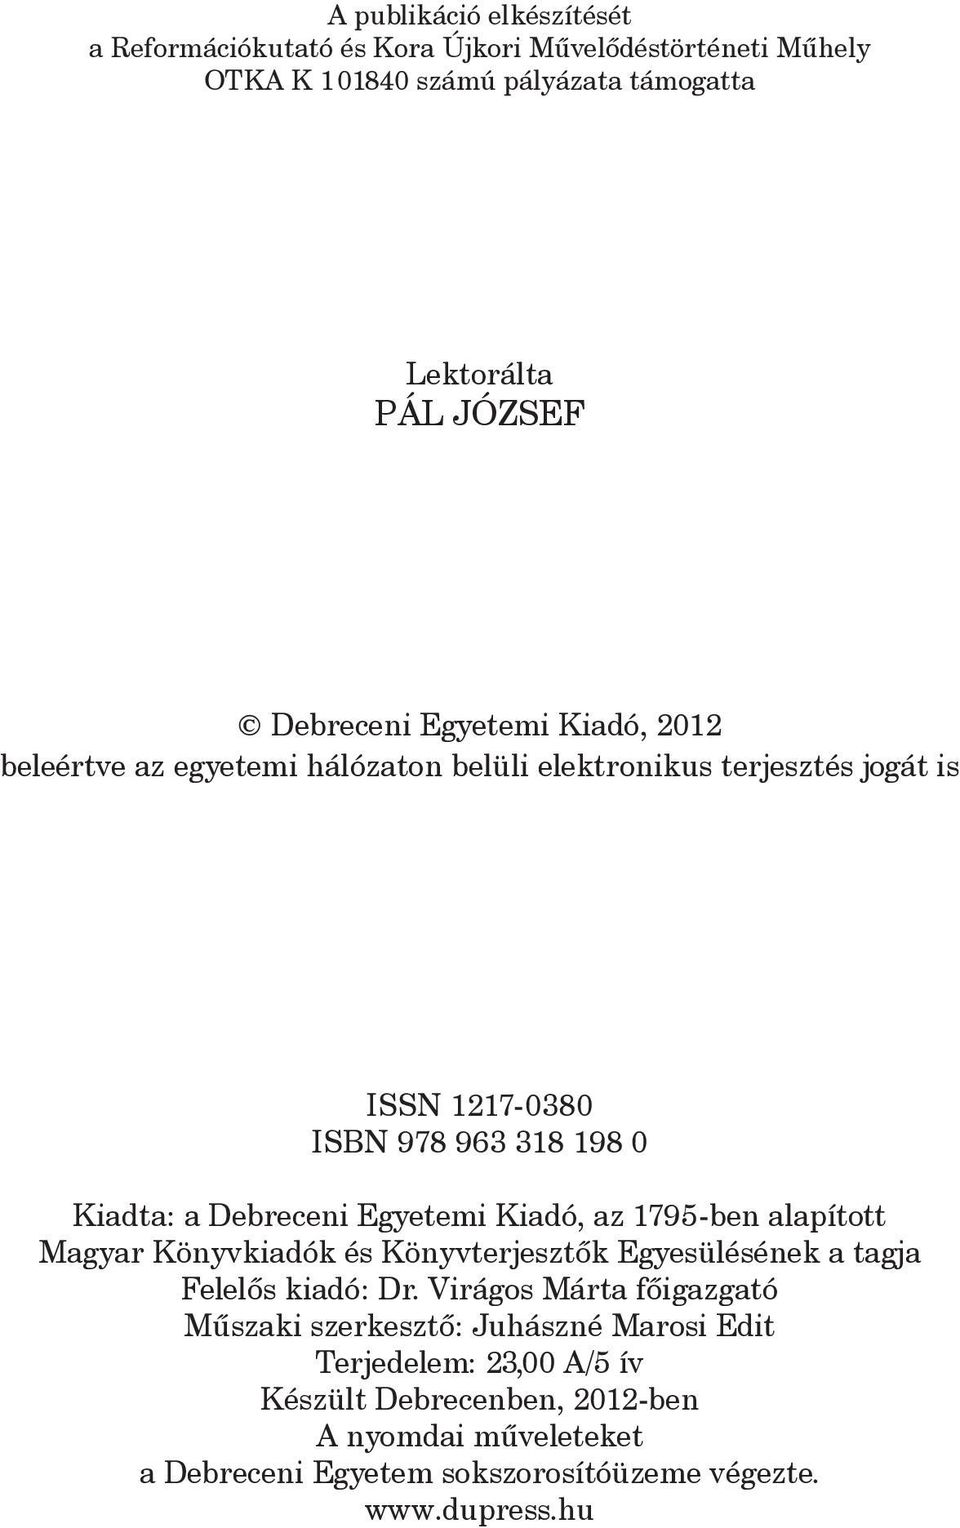 Egyetemi Kiadó, az 1795-ben alapított Magyar Könyvkiadók és Könyvterjesztõk Egyesülésének a tagja Felelõs kiadó: Dr.